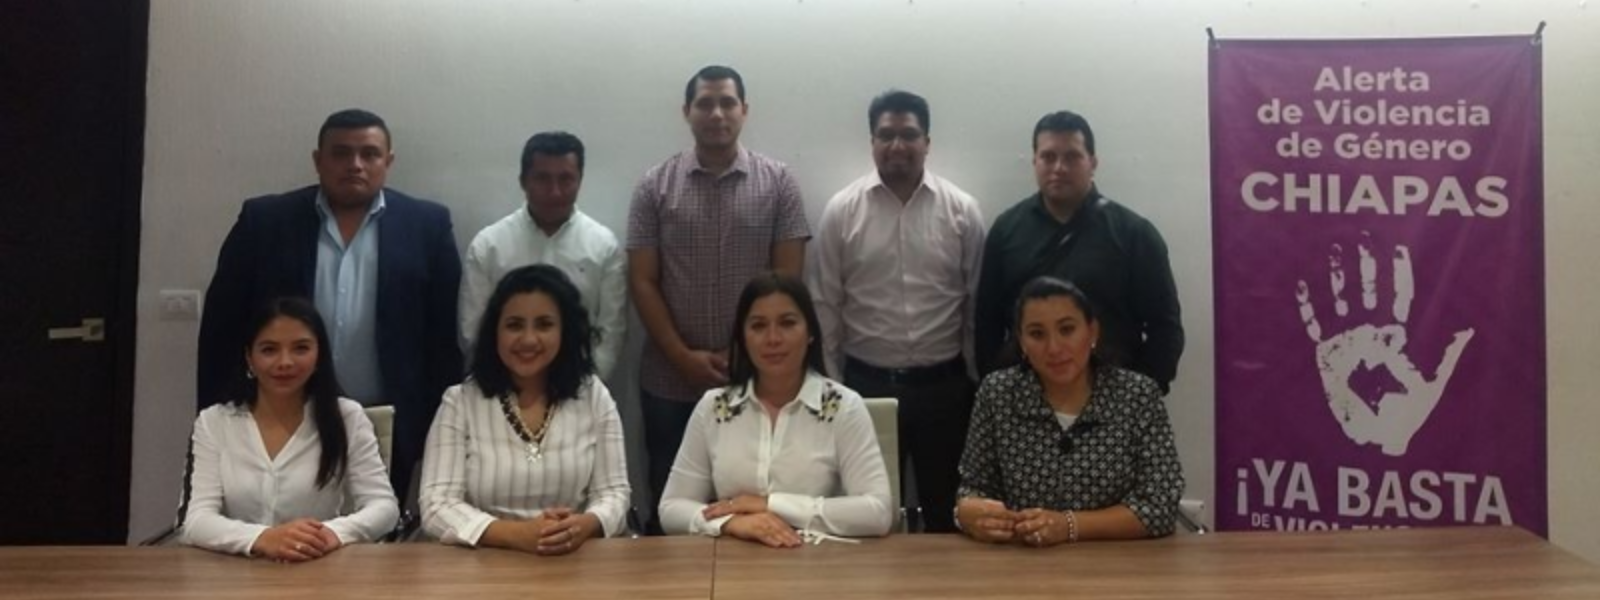 Reunión con integrantes de la Organización Generación 21 de Chiapas. 28/01/2020